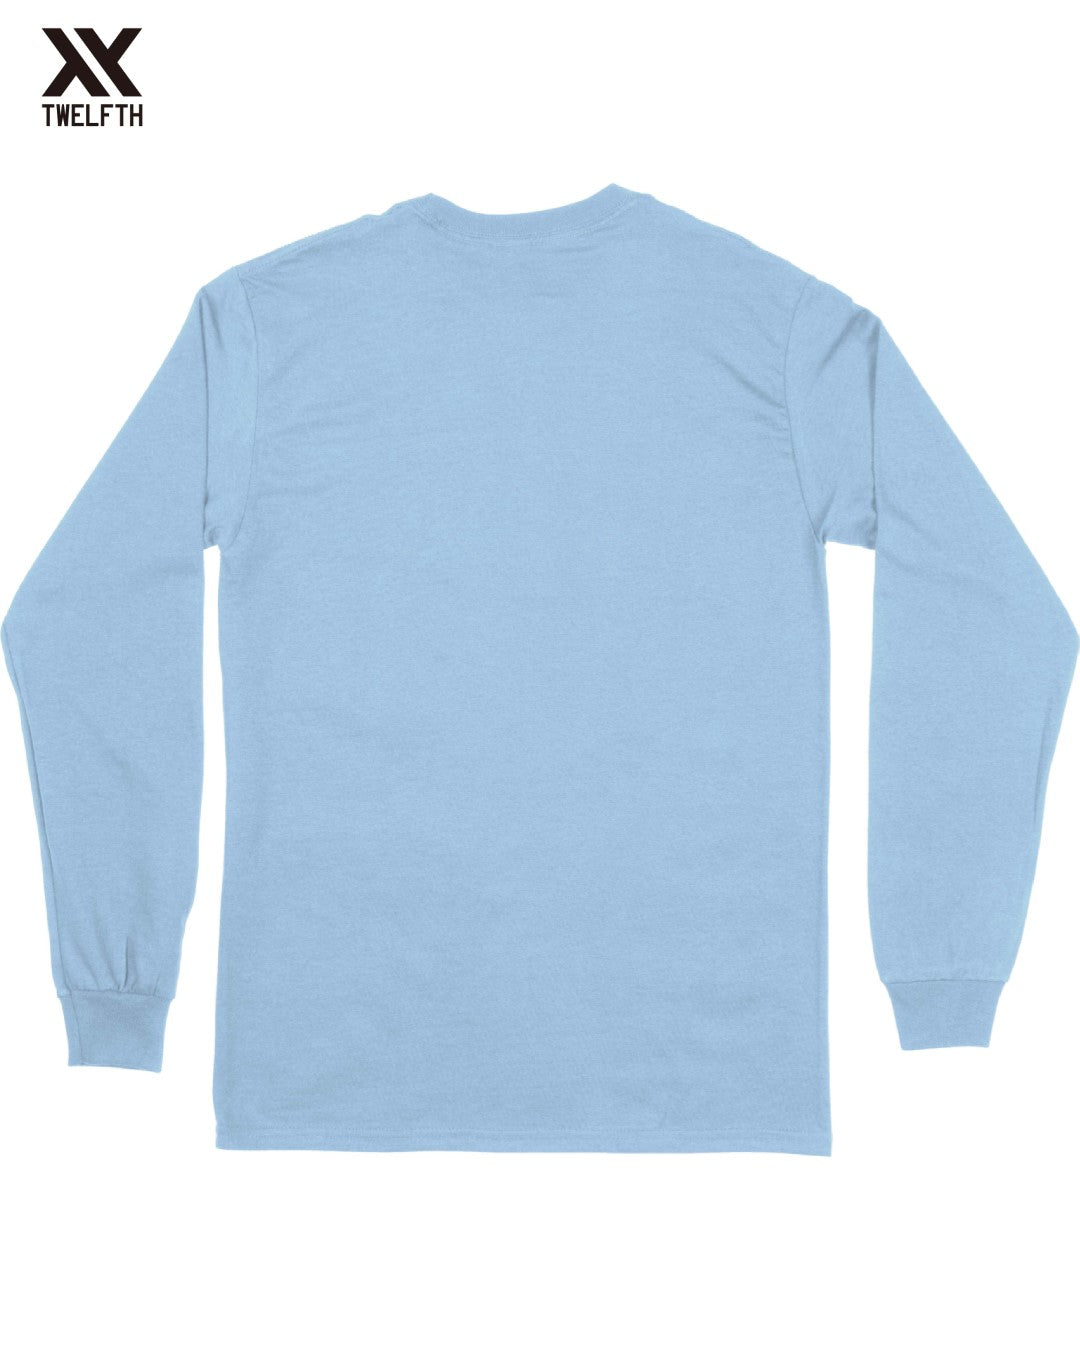 Manchester City Crest T-Shirt - Mens - Long Sleeve